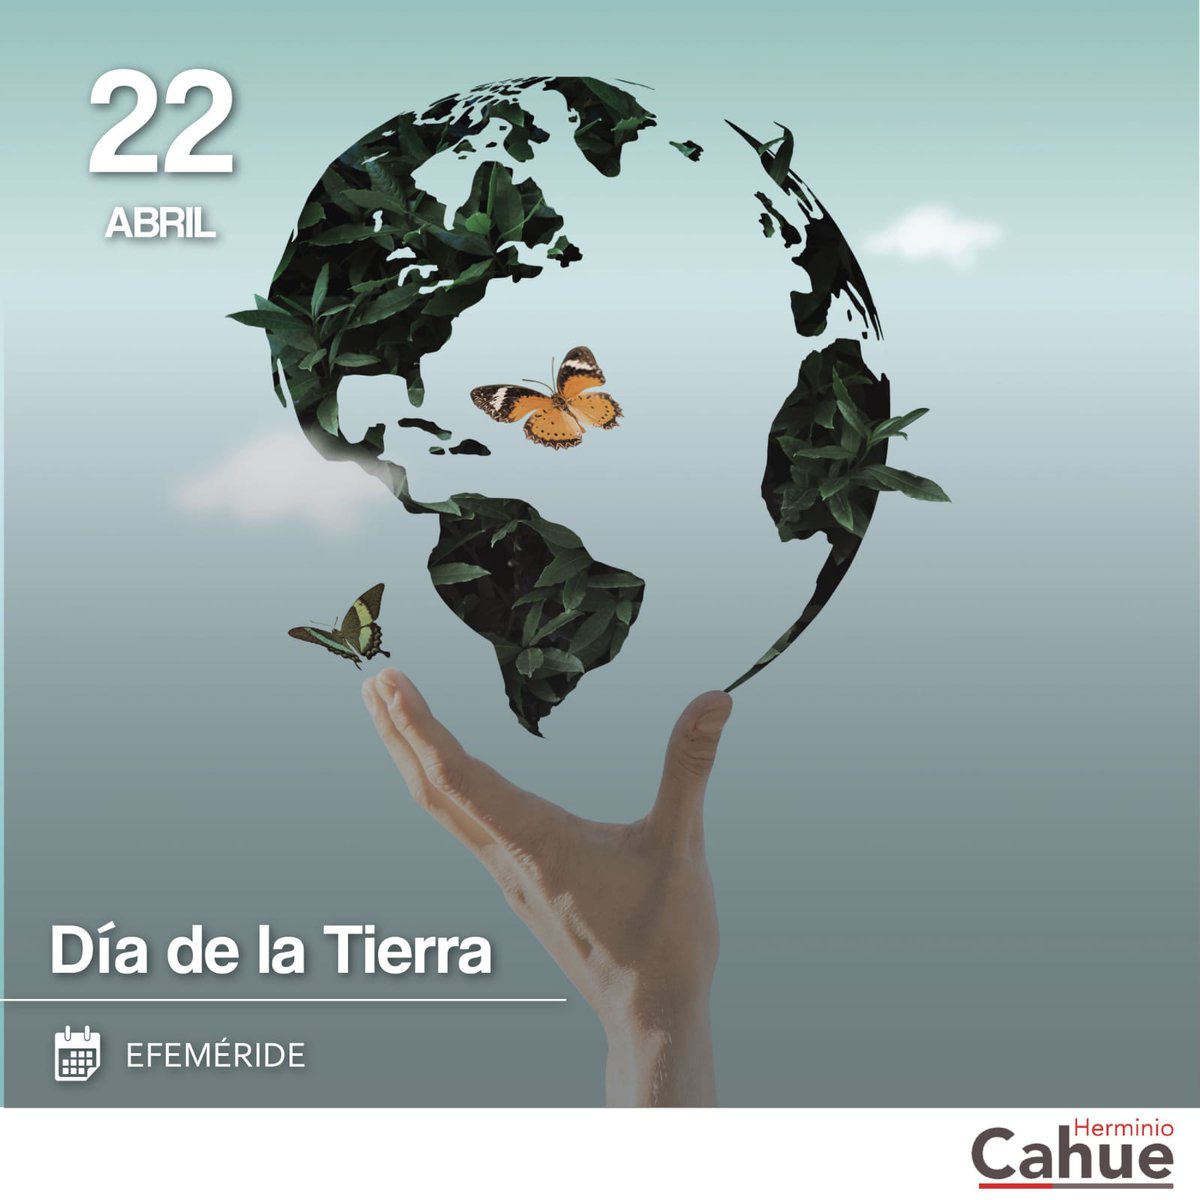 Hoy conmemoramos el #DiadeLaTierra con el lema 'El planeta versus plásticos'. La reflexión y toma de acciones son imprescindibles para cuidar nuestro mundo. #SindicalismoDeLaManoContigo